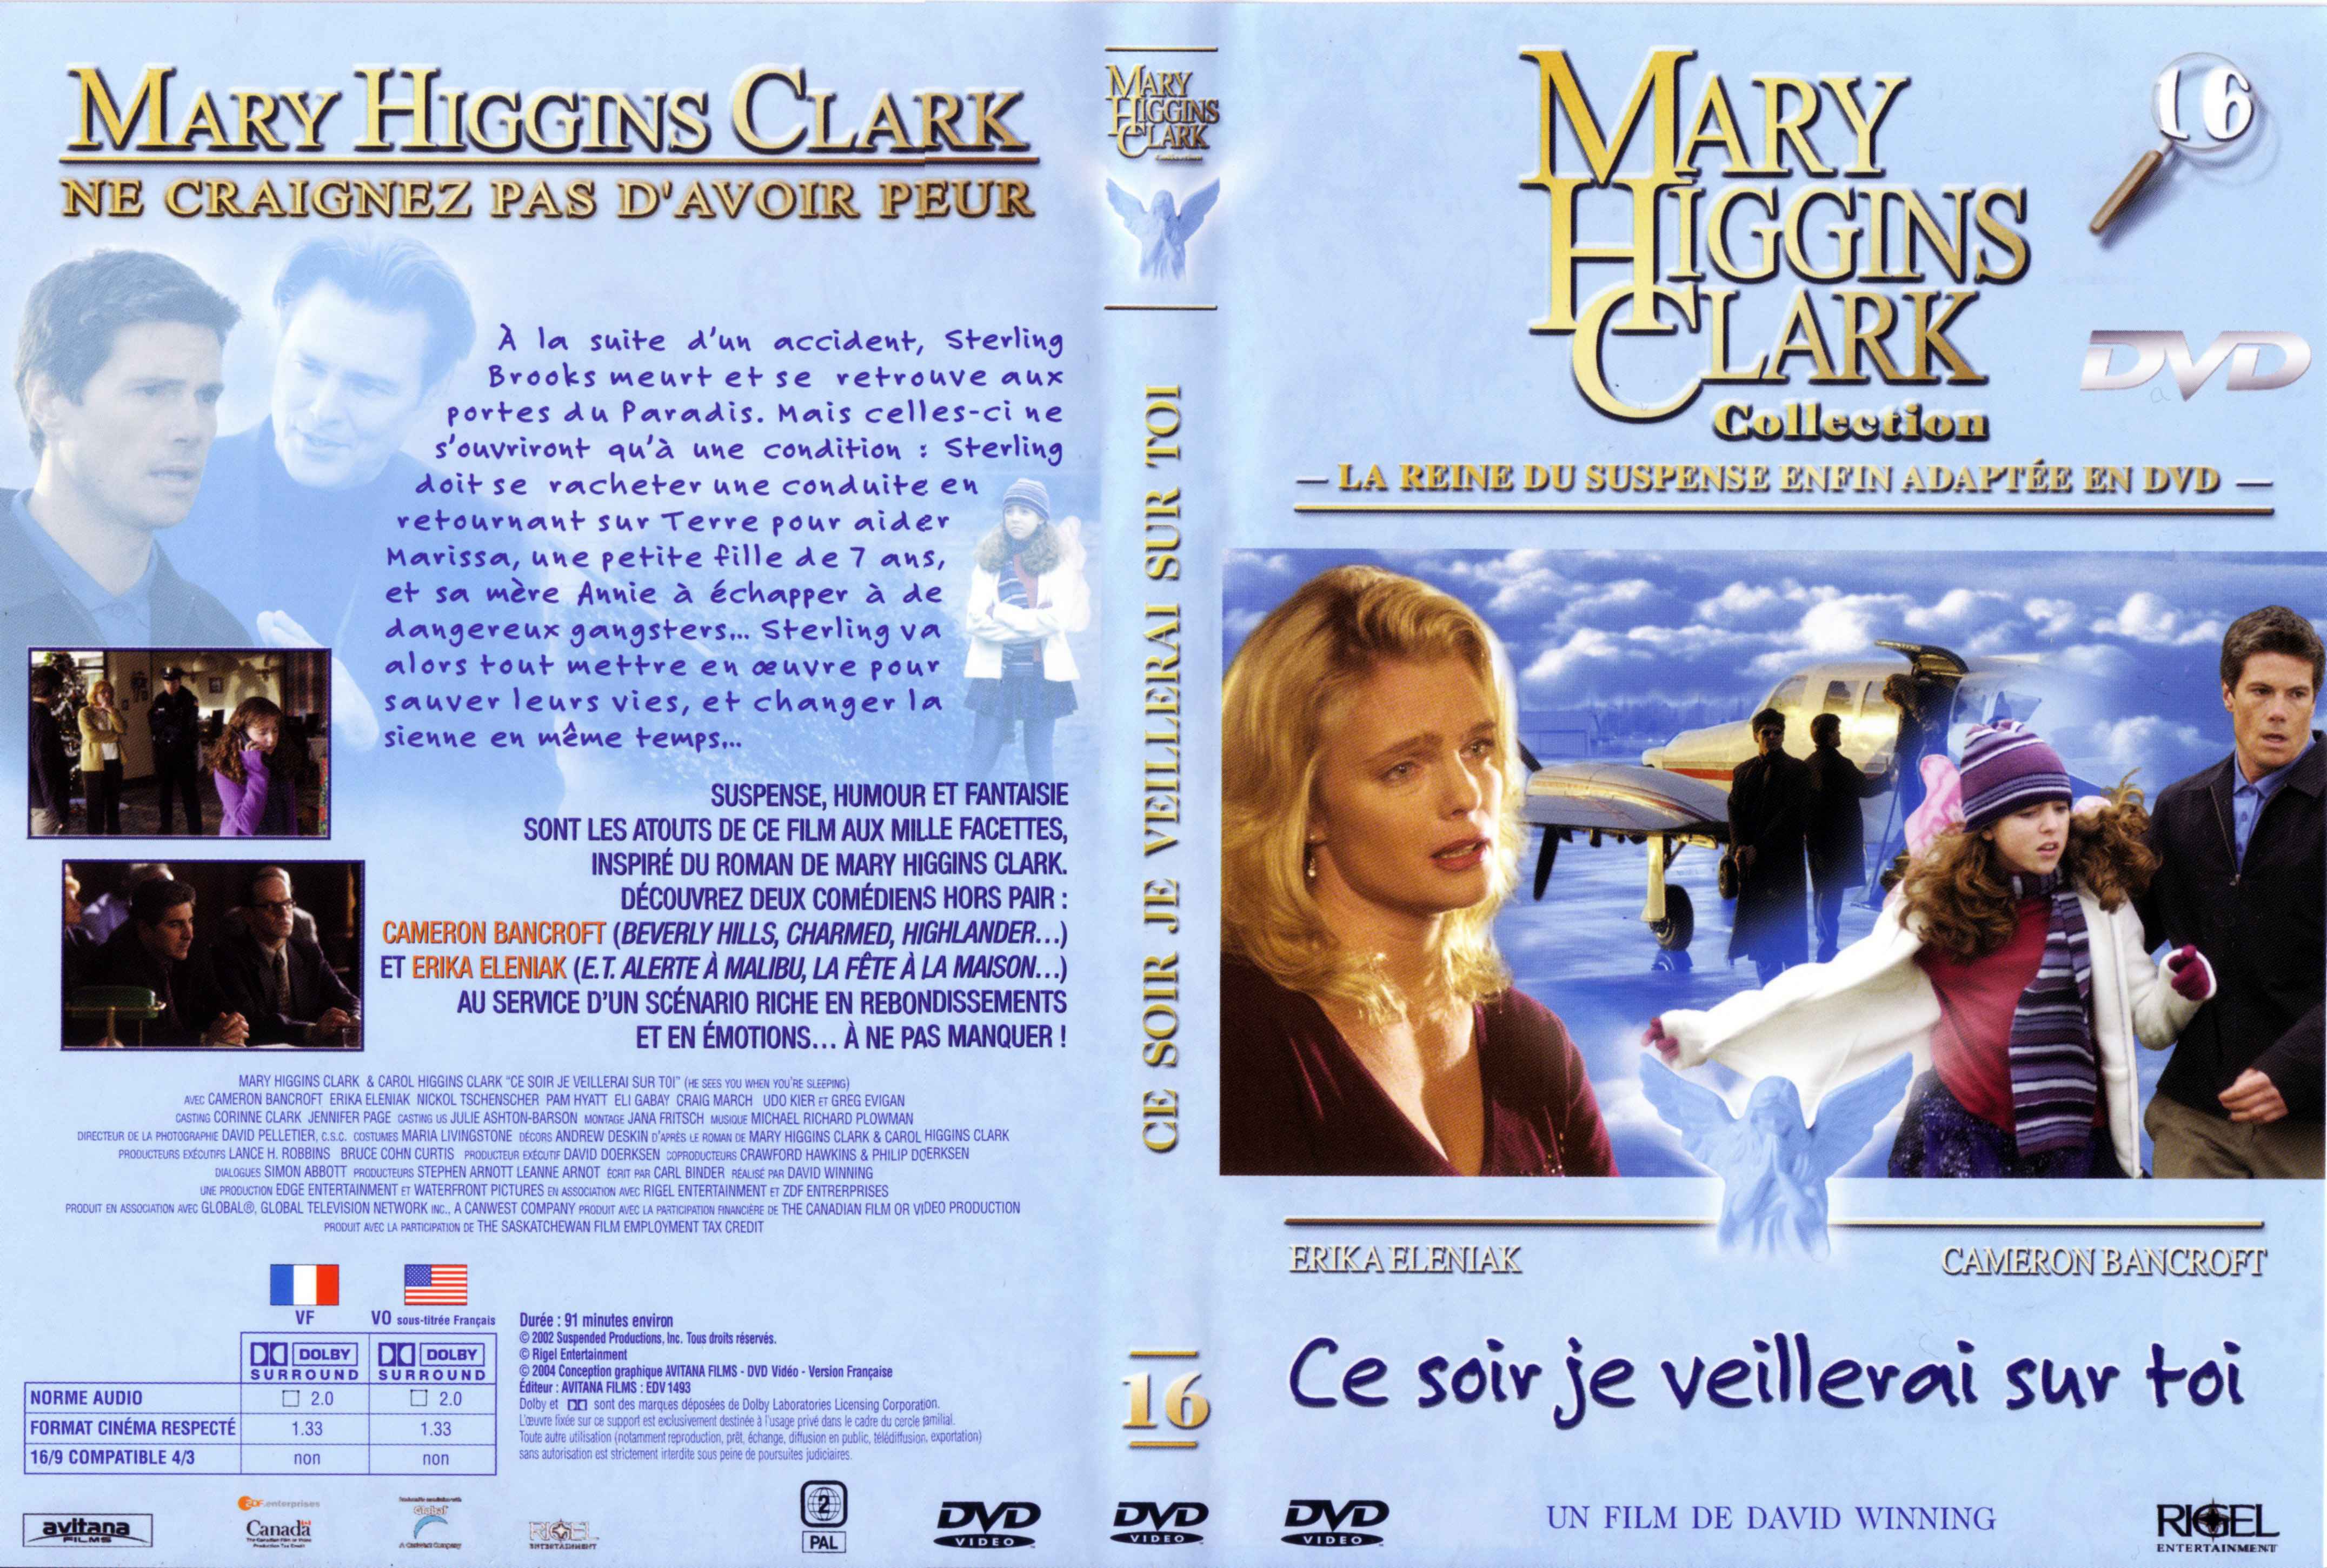 Jaquette DVD de Mary Higgins Clark vol 16 - Ce soir je veillerai sur toi - Cinéma Passion4304 x 2901